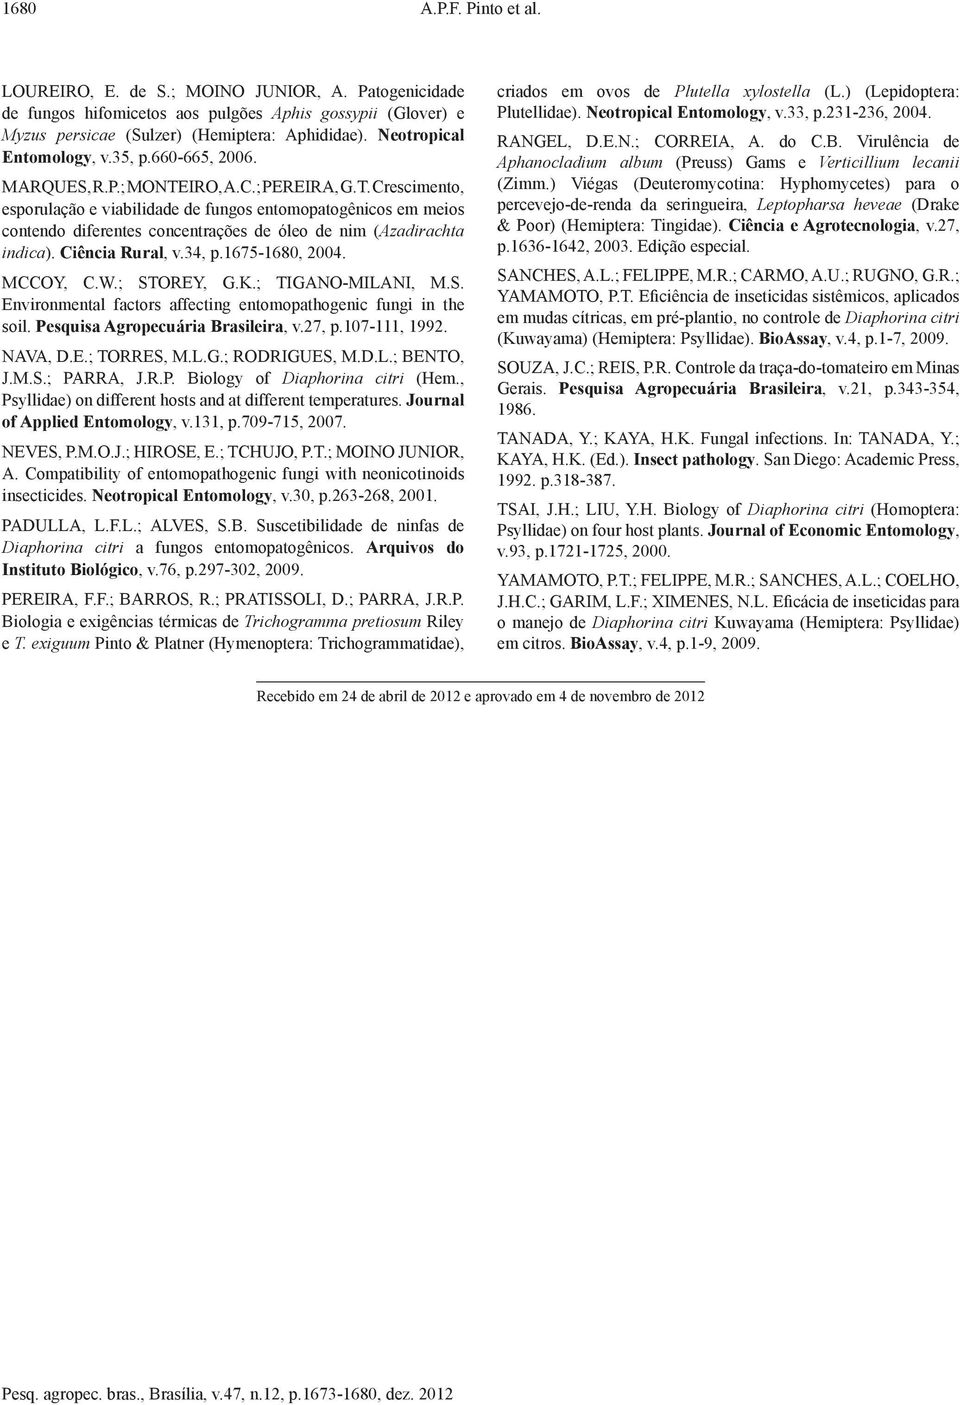 IRO, A.C.; PEREIRA, G.T. Crescimento, esporulação e viabilidade de fungos entomopatogênicos em meios contendo diferentes concentrações de óleo de nim (Azadirachta indica). Ciência Rural, v.34, p.